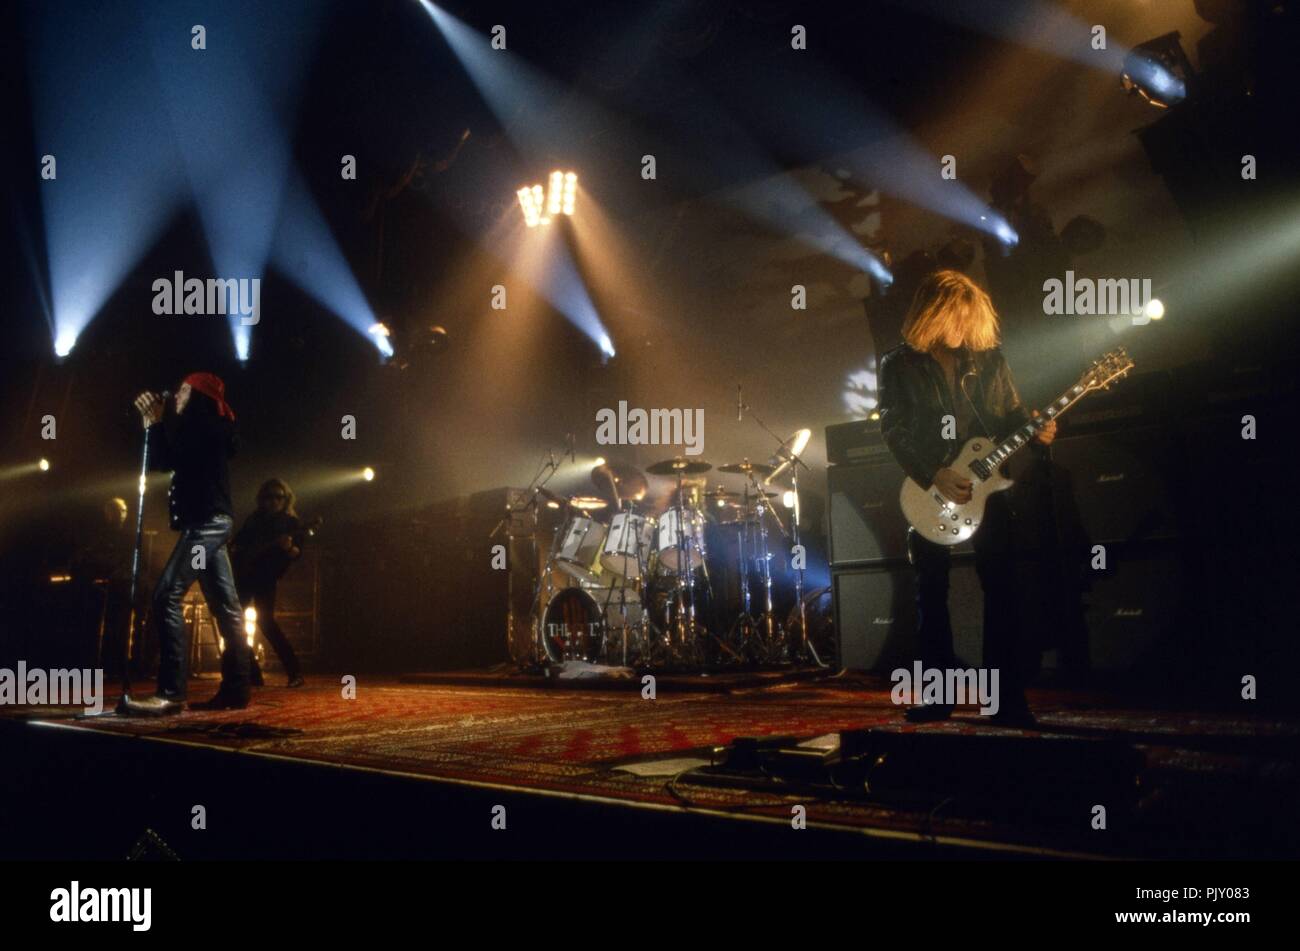 "Il culto', britische Rockband beim Konzert in Deutschland, 1990er Jahre. British rock band "culto", live in concerto in Germania, 1990s. | Utilizzo di tutto il mondo Foto Stock